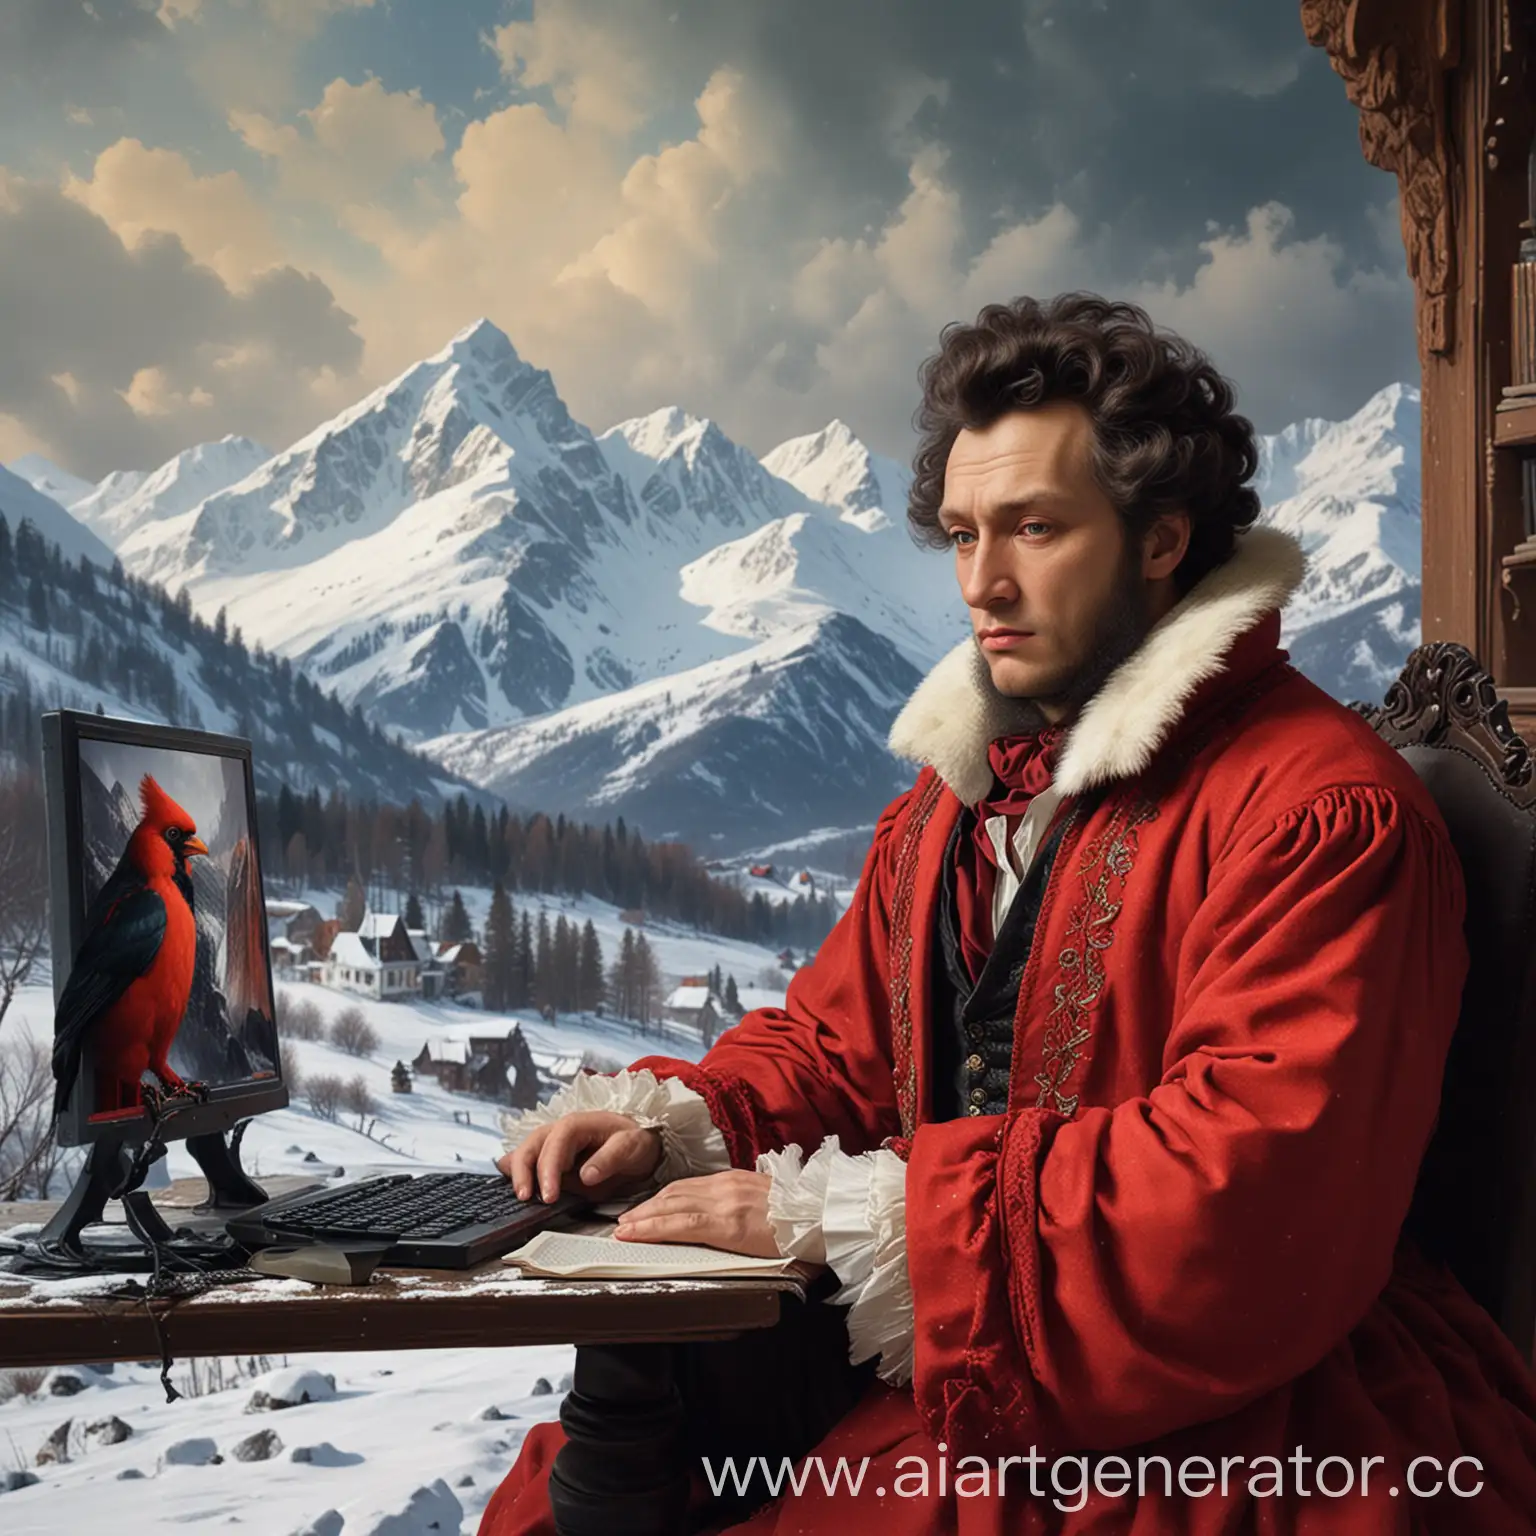 Пушкин сидит за компьютером важно . Женщина Алая ведьма за его спиной скучает . На фоне заснеженных гор .